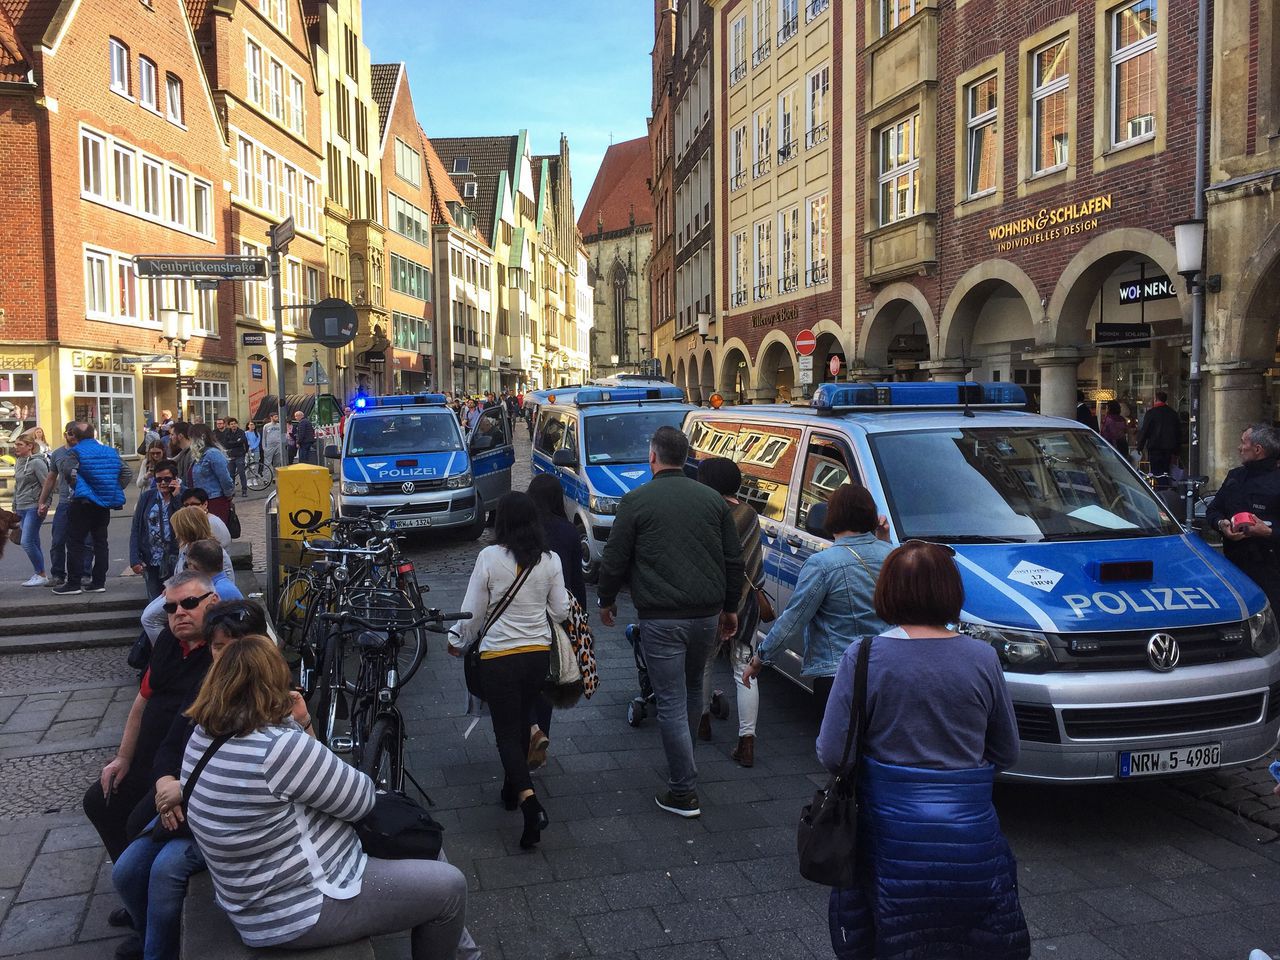 3 doden nadat auto terras Münster oprijdt - ‘dader verwarde man’ 